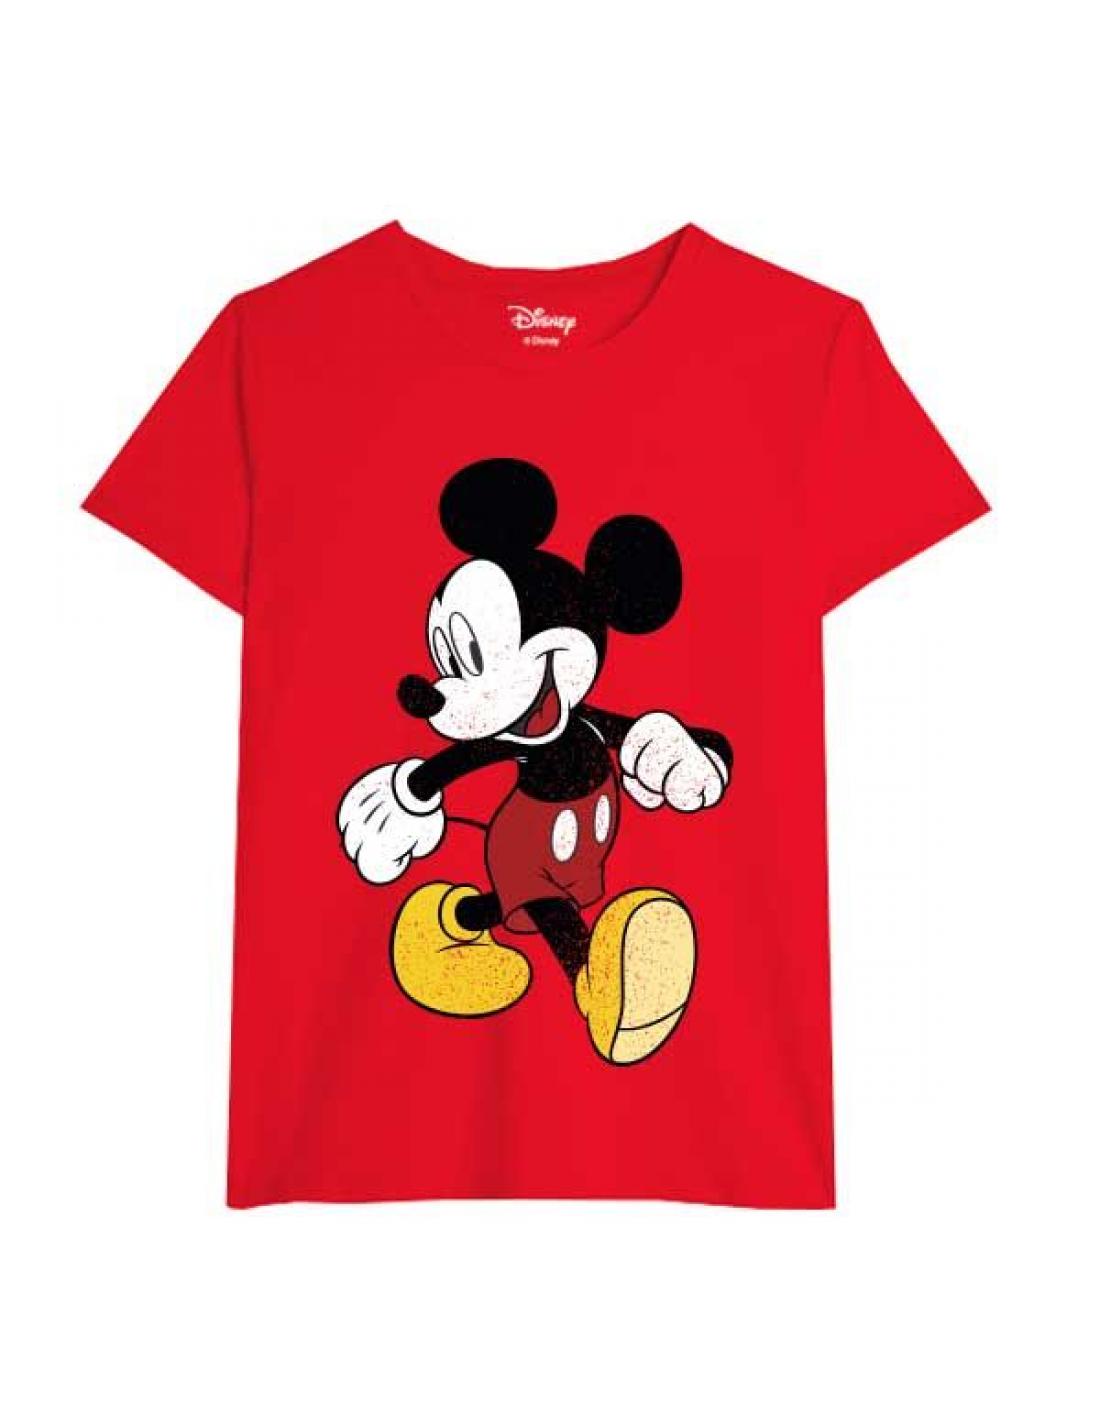 Camiseta Disney Mickey Mouse juvenil/adulto M -